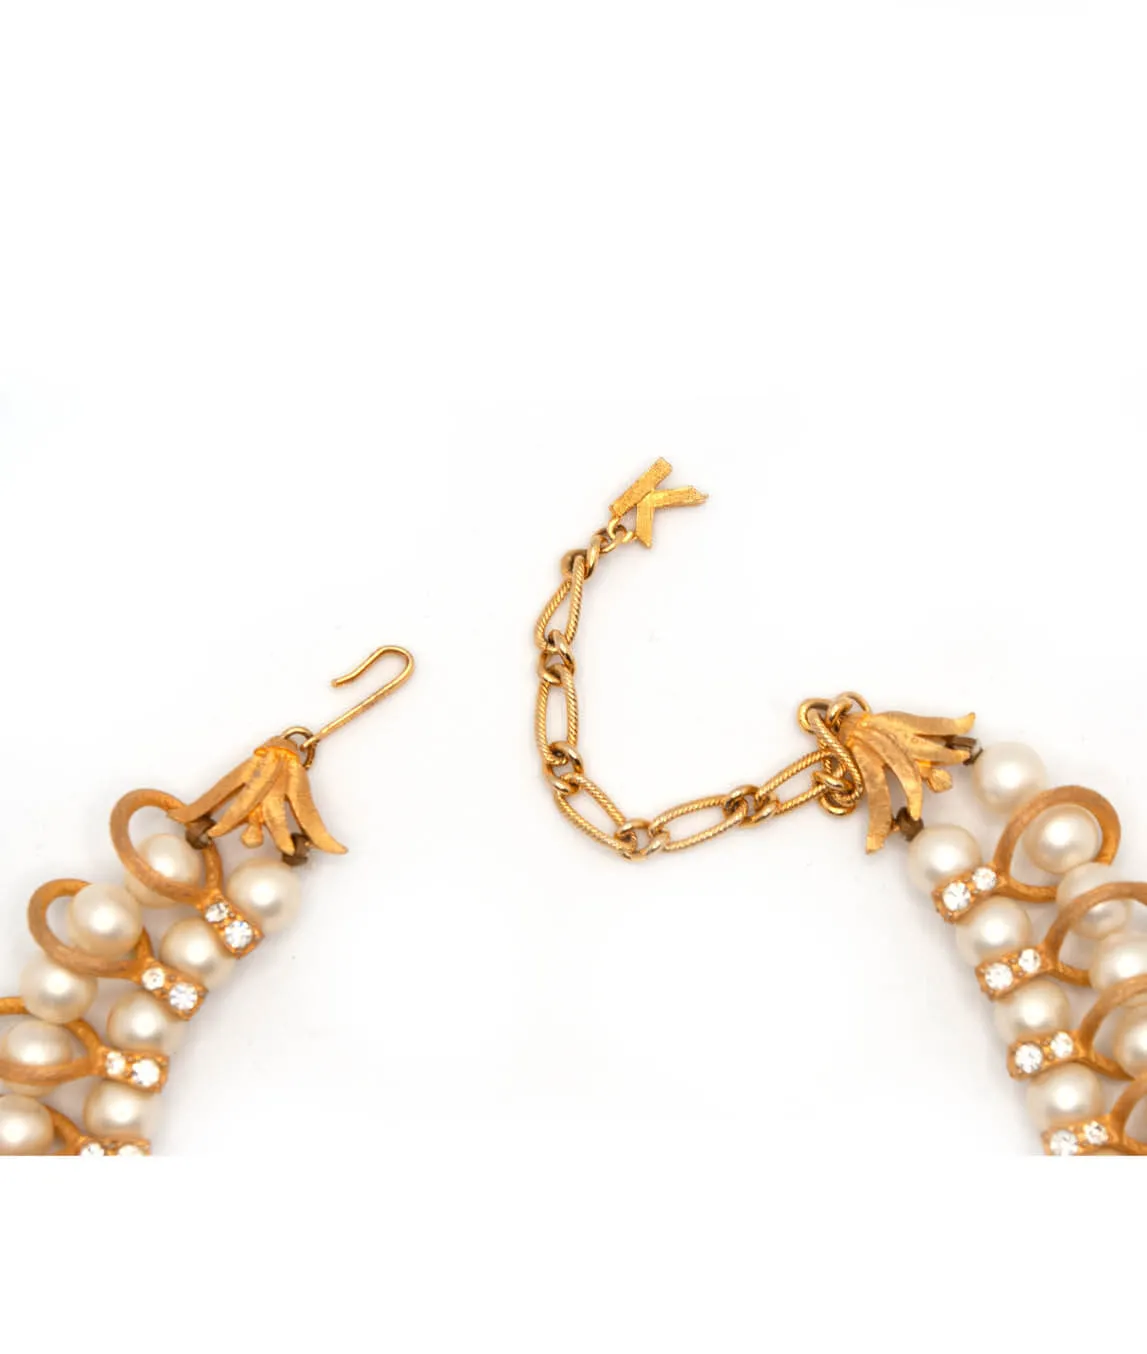 Vintage Kramer Faux Pearl and Golden Loop Necklace K tag